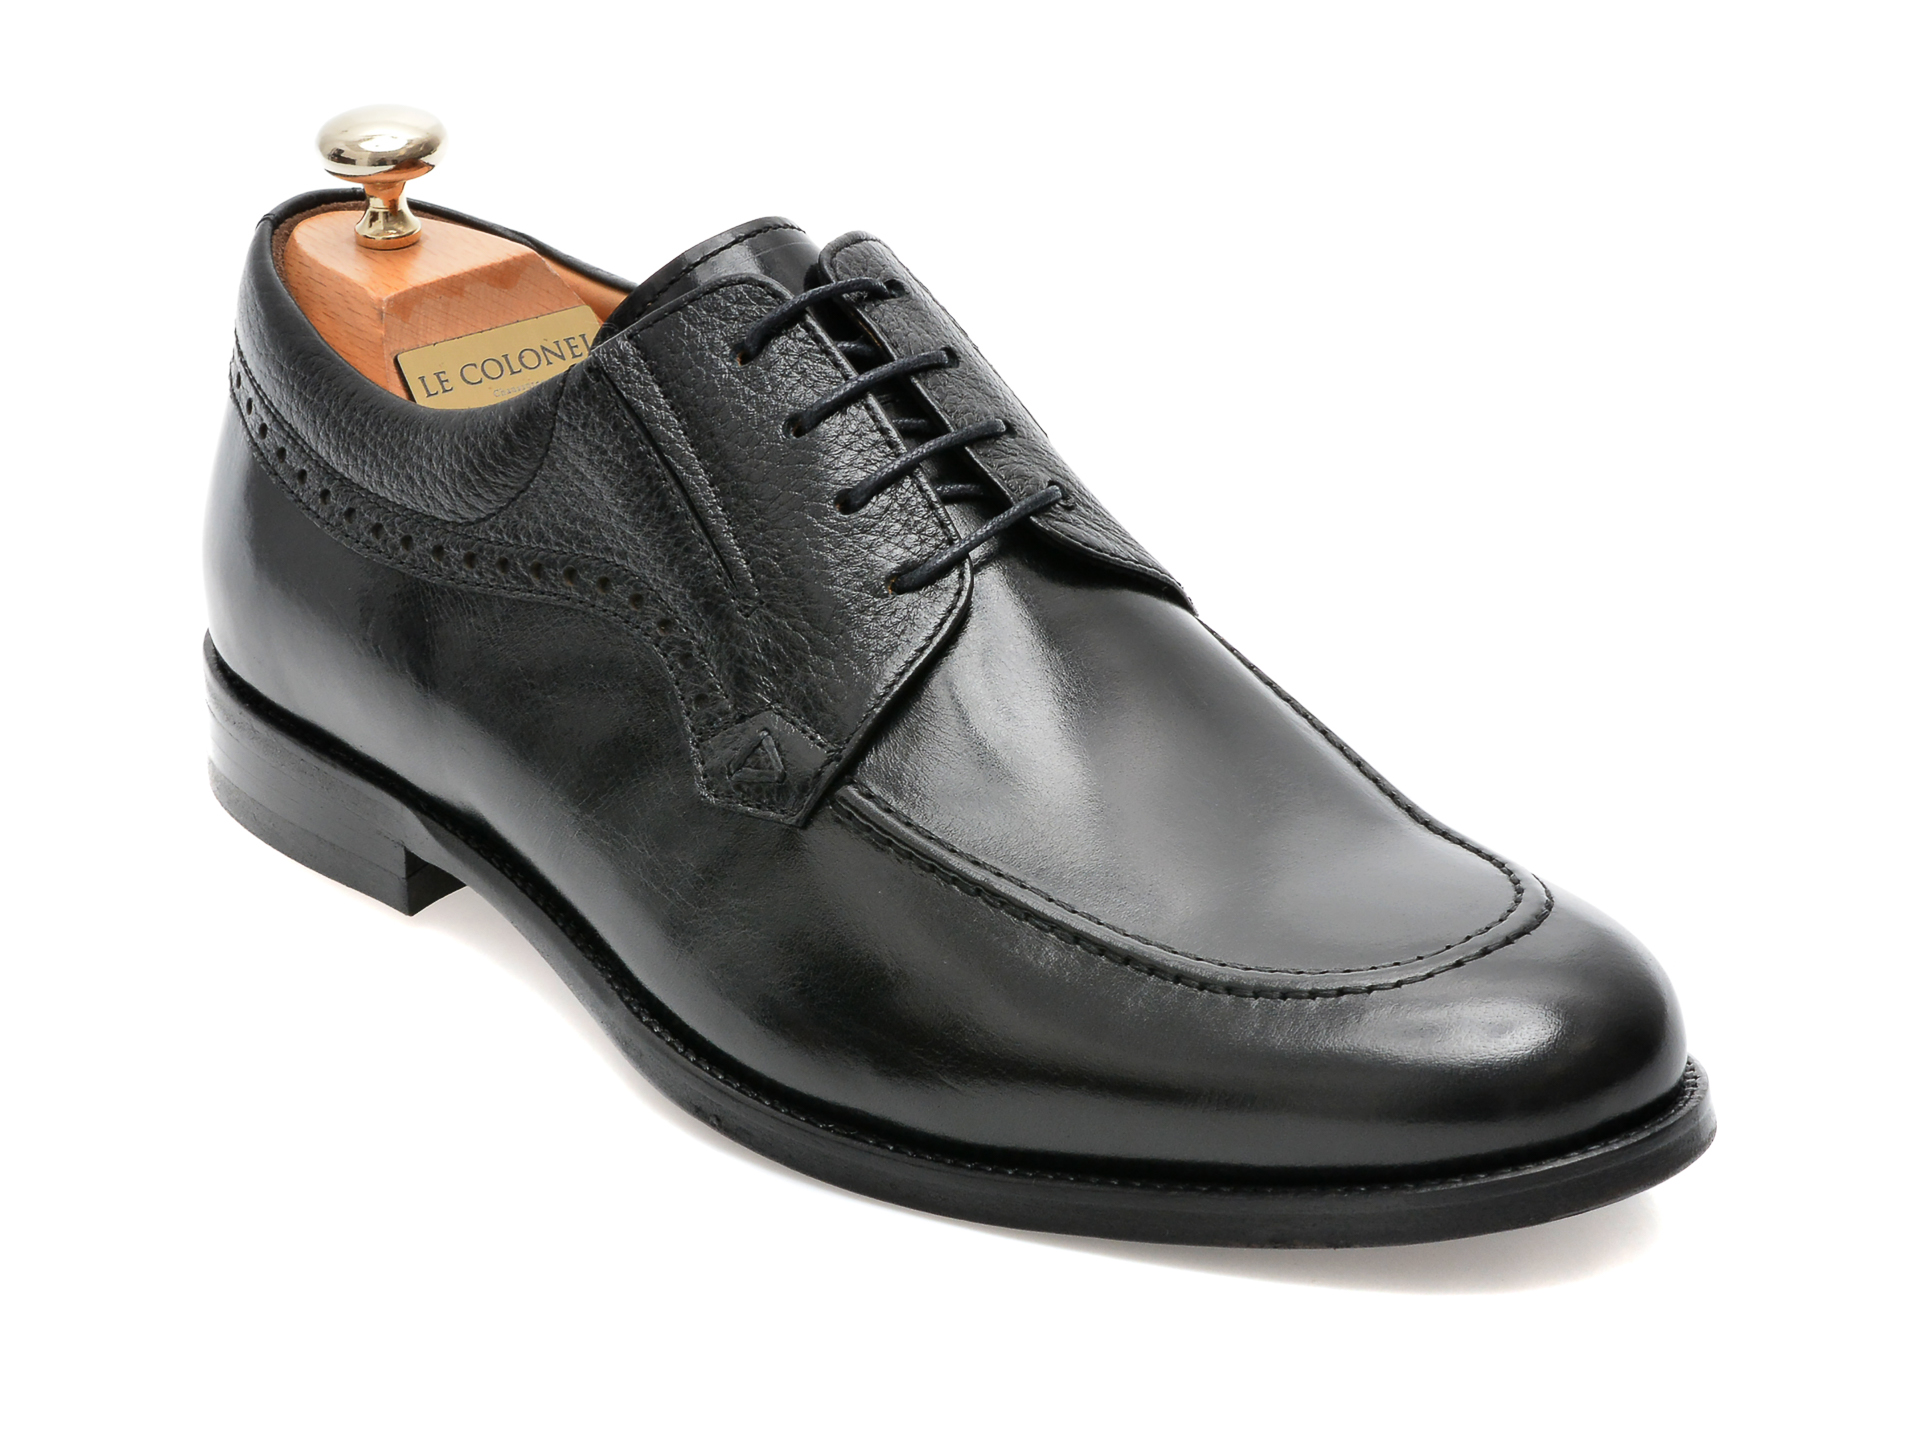 Pantofi LE COLONEL negri, 44746, din piele naturala barbati 2023-03-21